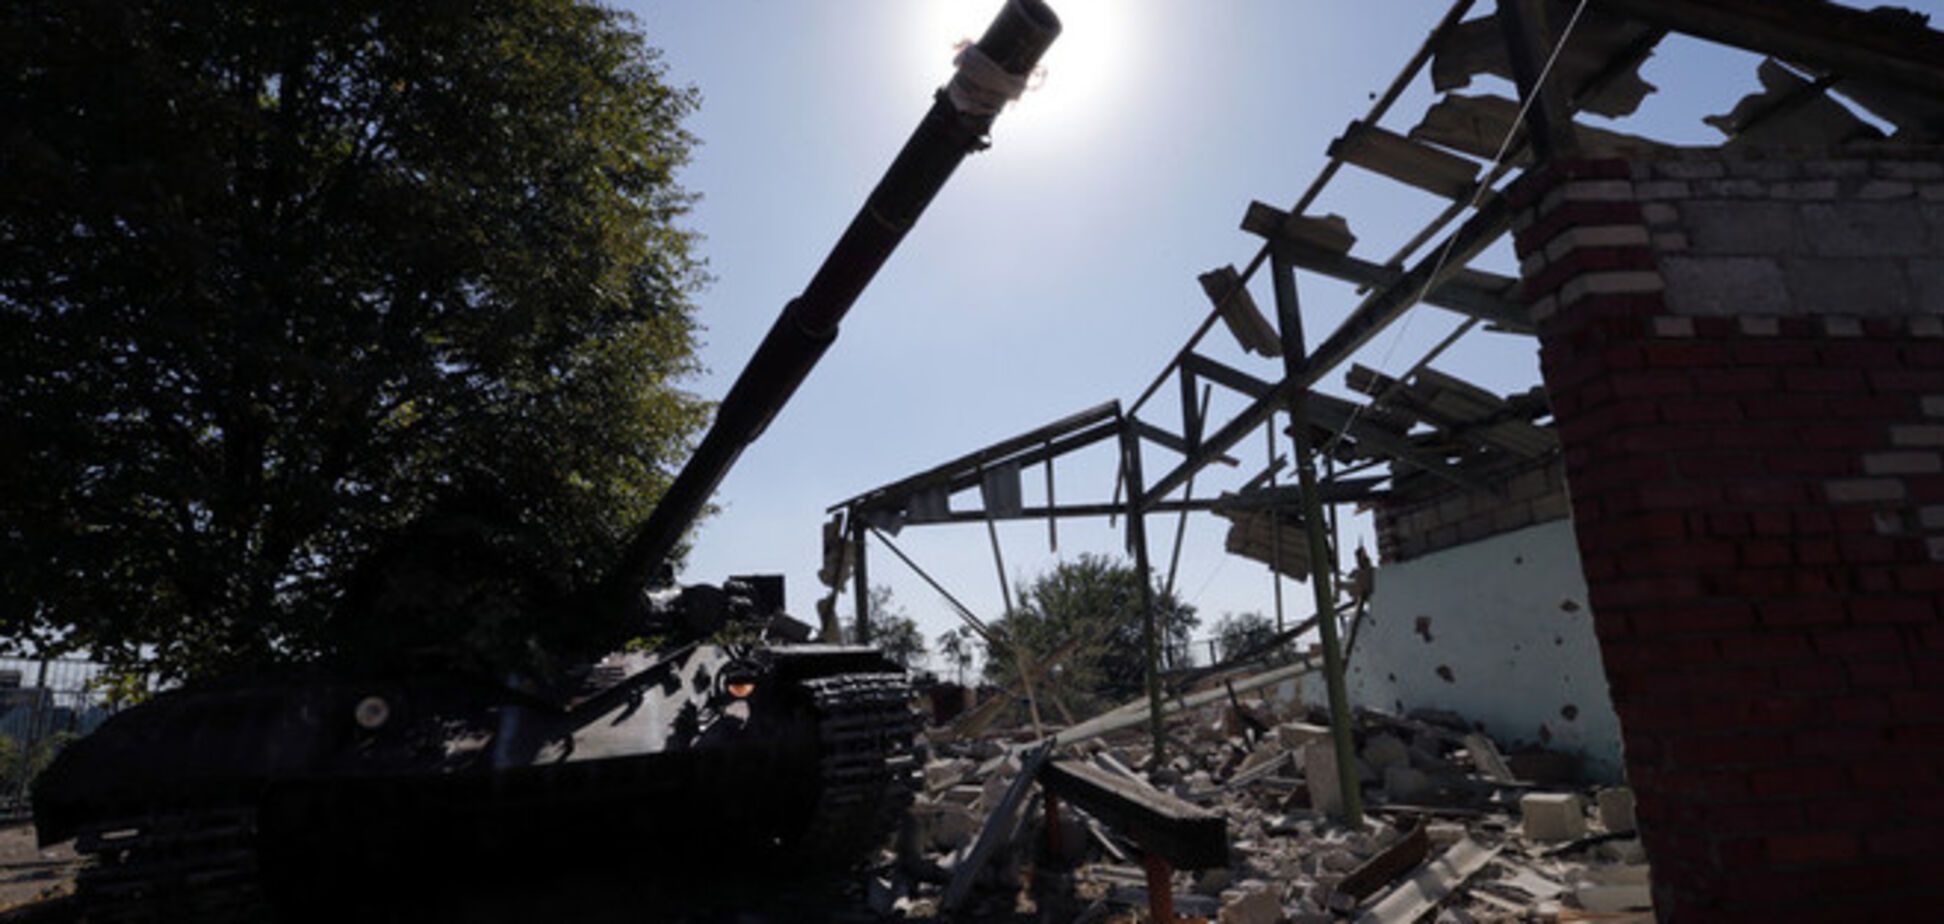 ООН подсчитала количество жертв военного конфликта на Донбассе